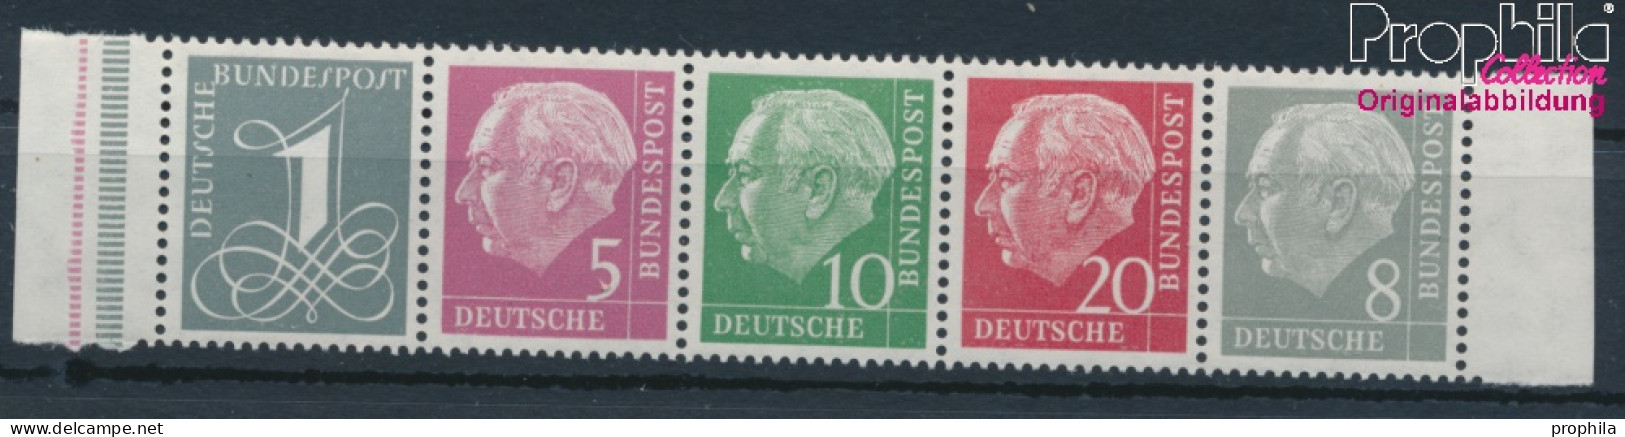 BRD 179Y,182Y,183Y,185Y,285Y (kompl.Ausg.) Liegendes Wasserzeichen Postfrisch 1960 Heuss I (10347828 - Ungebraucht